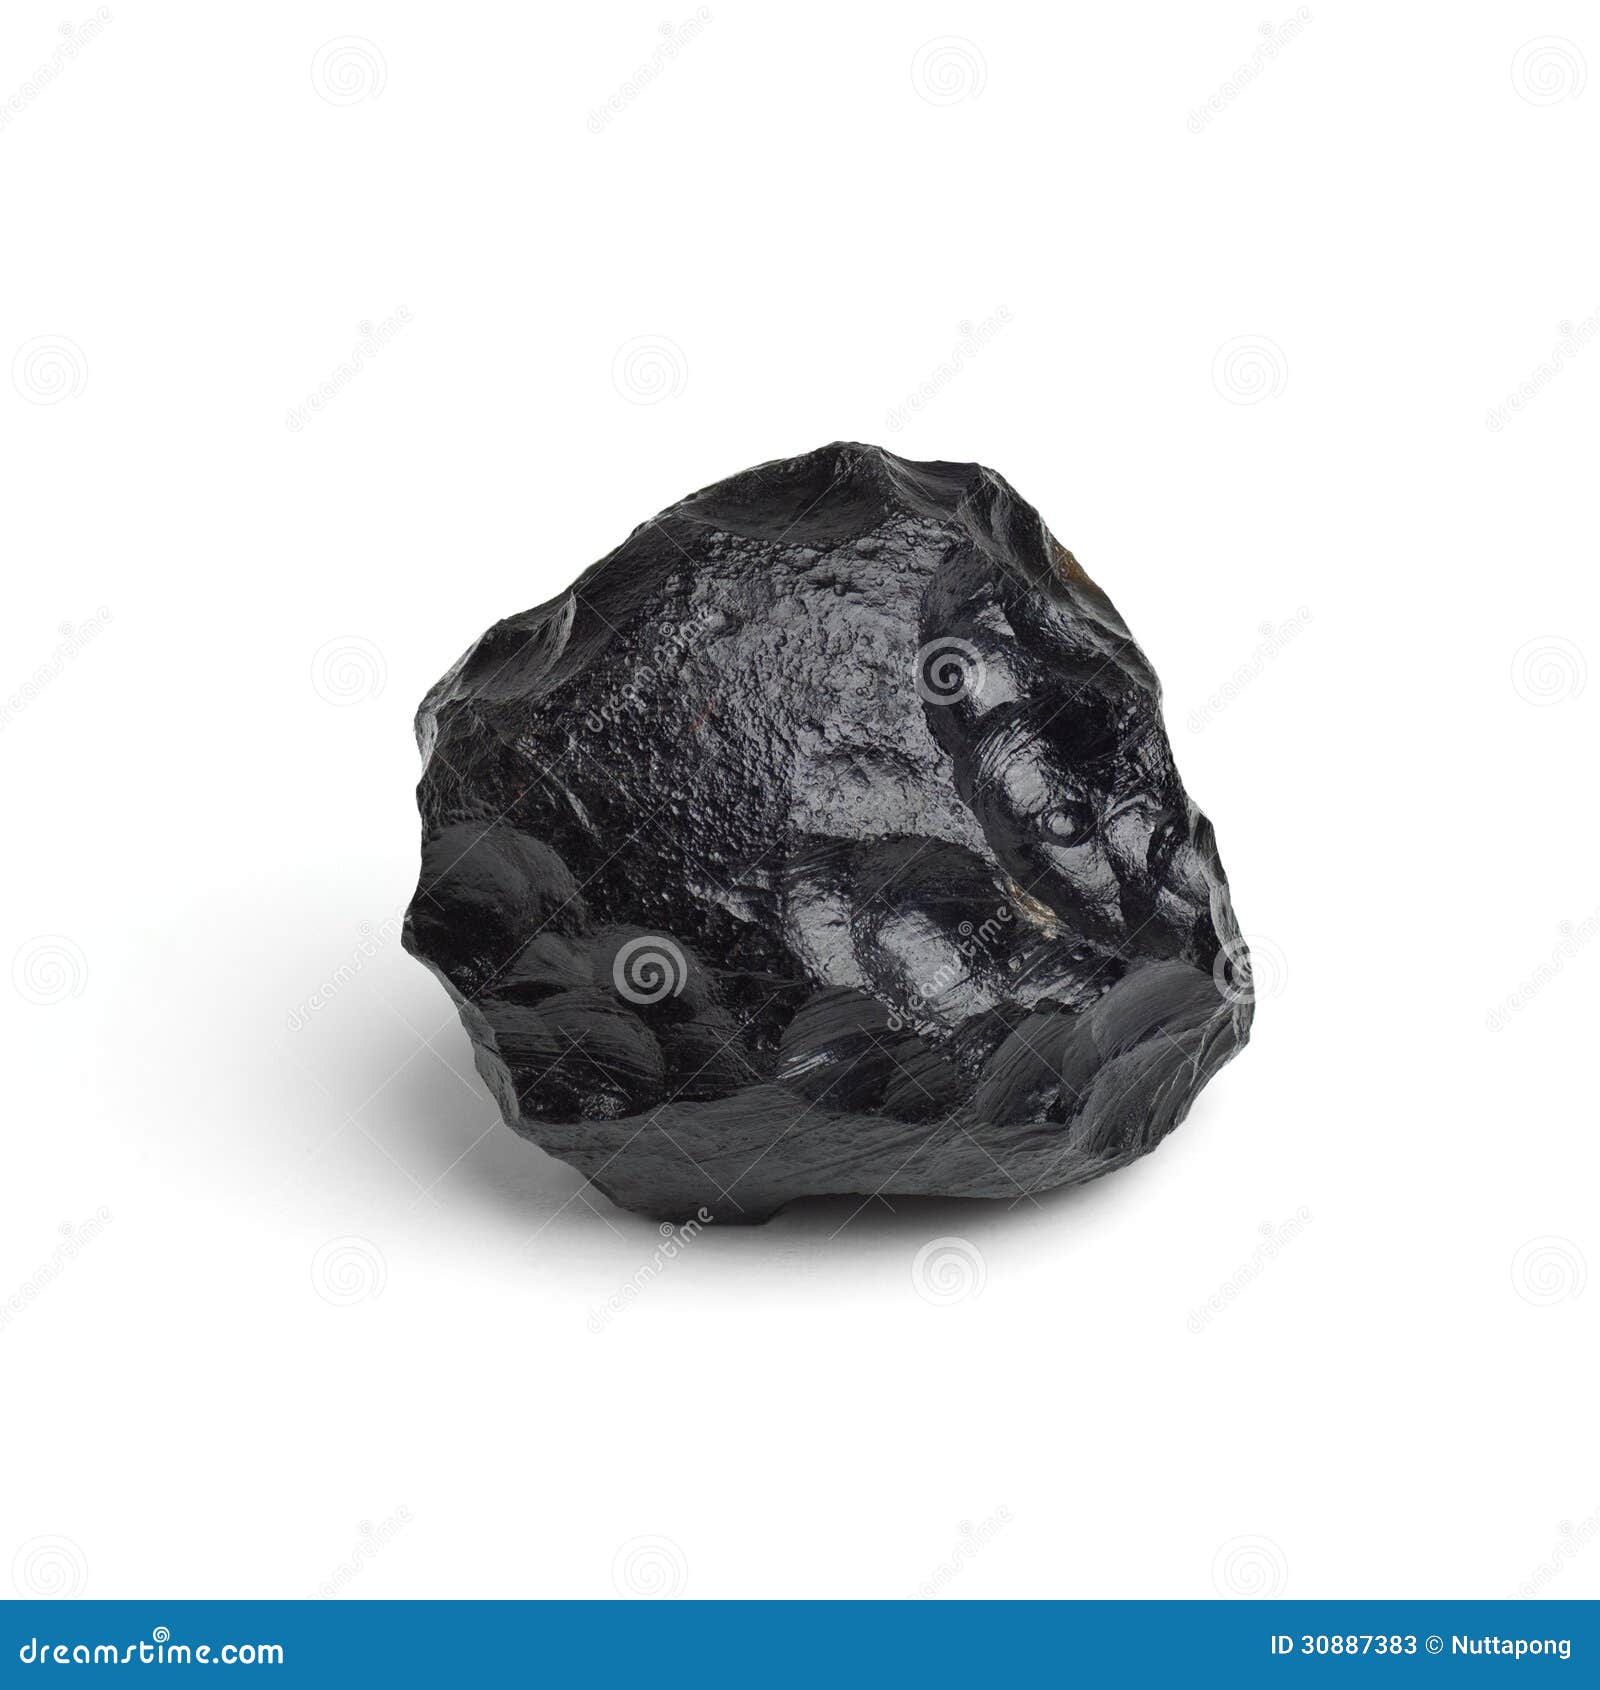 tektite meteorite